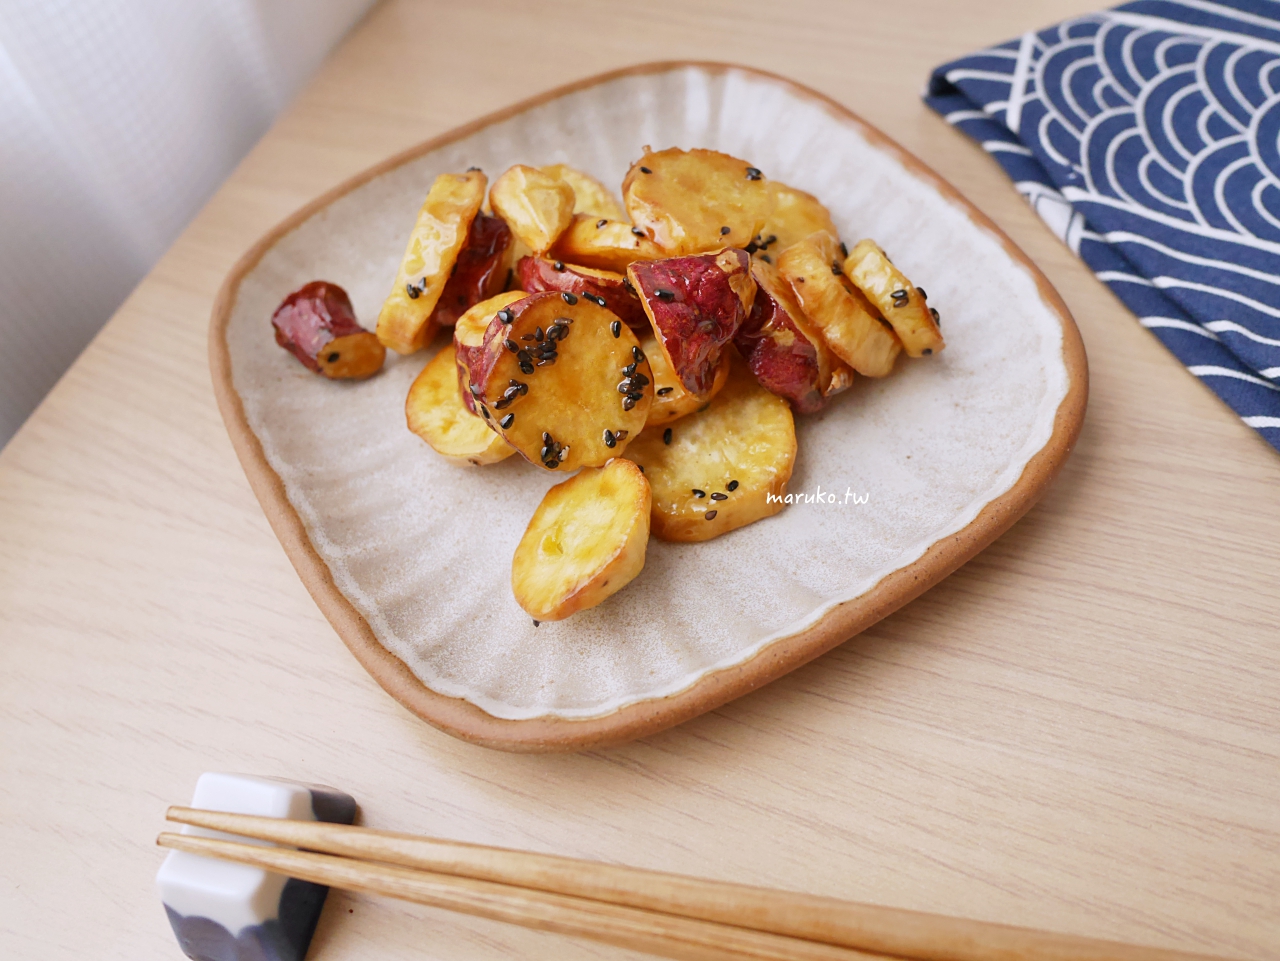 【食譜】20個氣炸鍋食譜 超實用,少點油多健康,食譜做法分享 @Maruko與美食有個約會